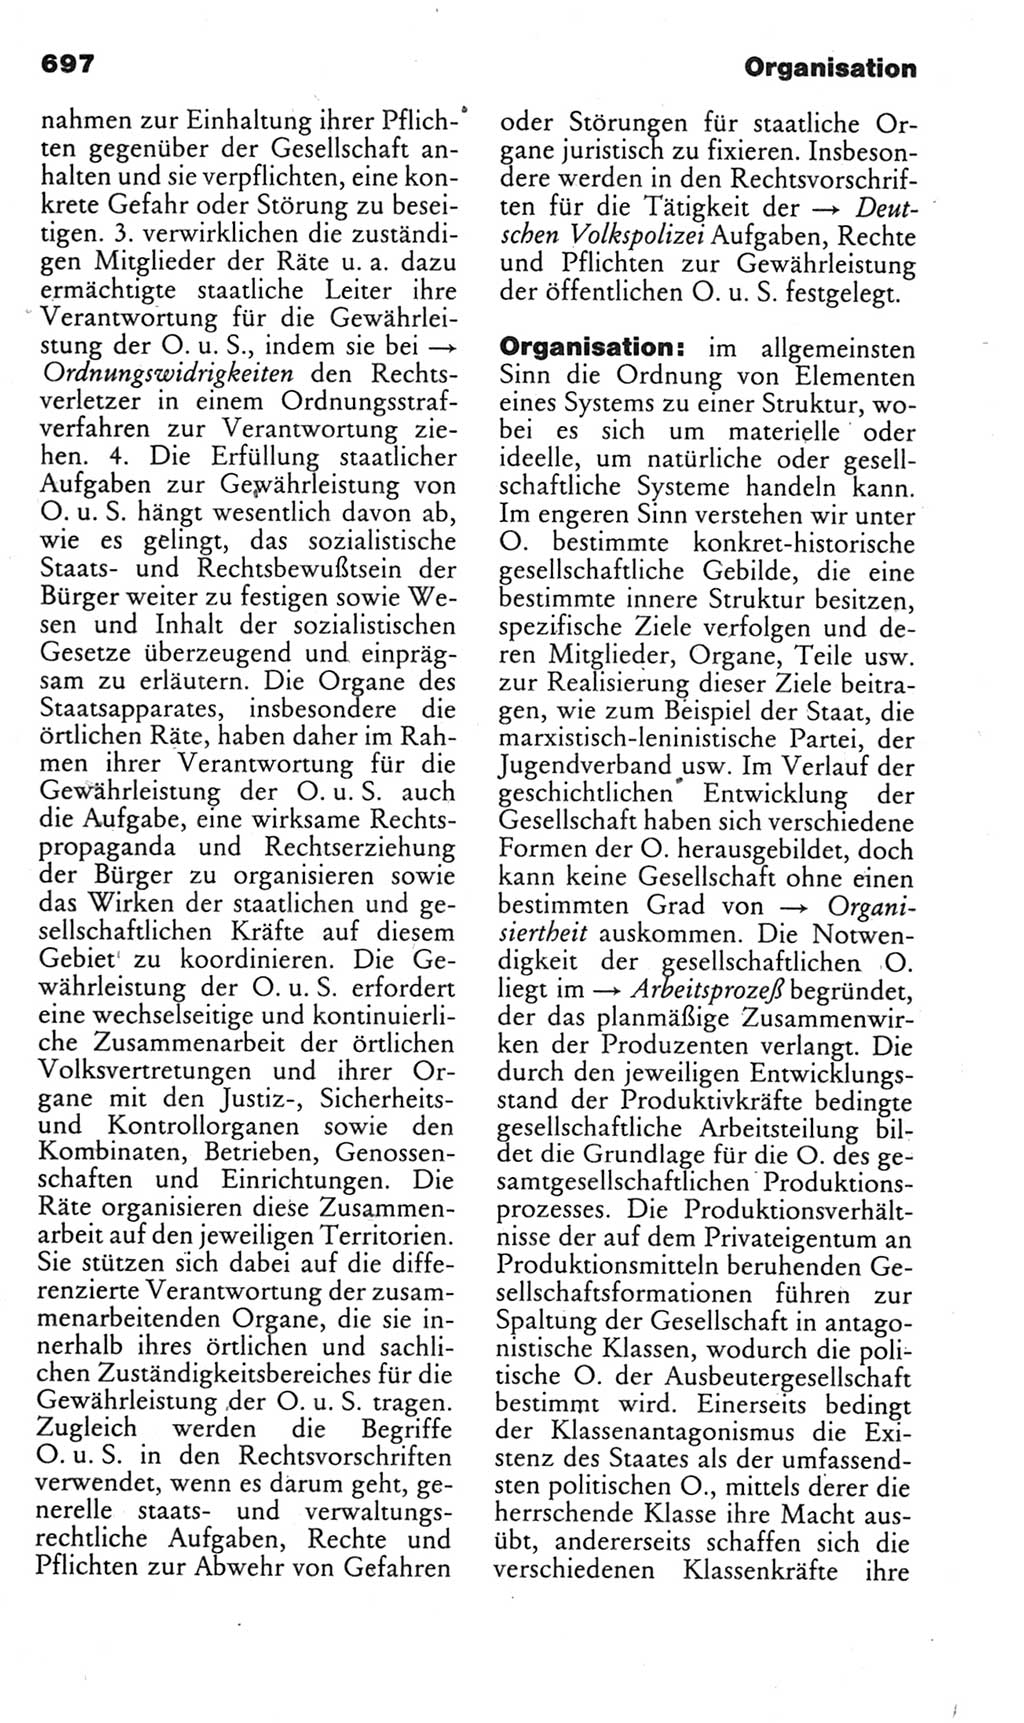 Kleines politisches Wörterbuch [Deutsche Demokratische Republik (DDR)] 1985, Seite 697 (Kl. pol. Wb. DDR 1985, S. 697)